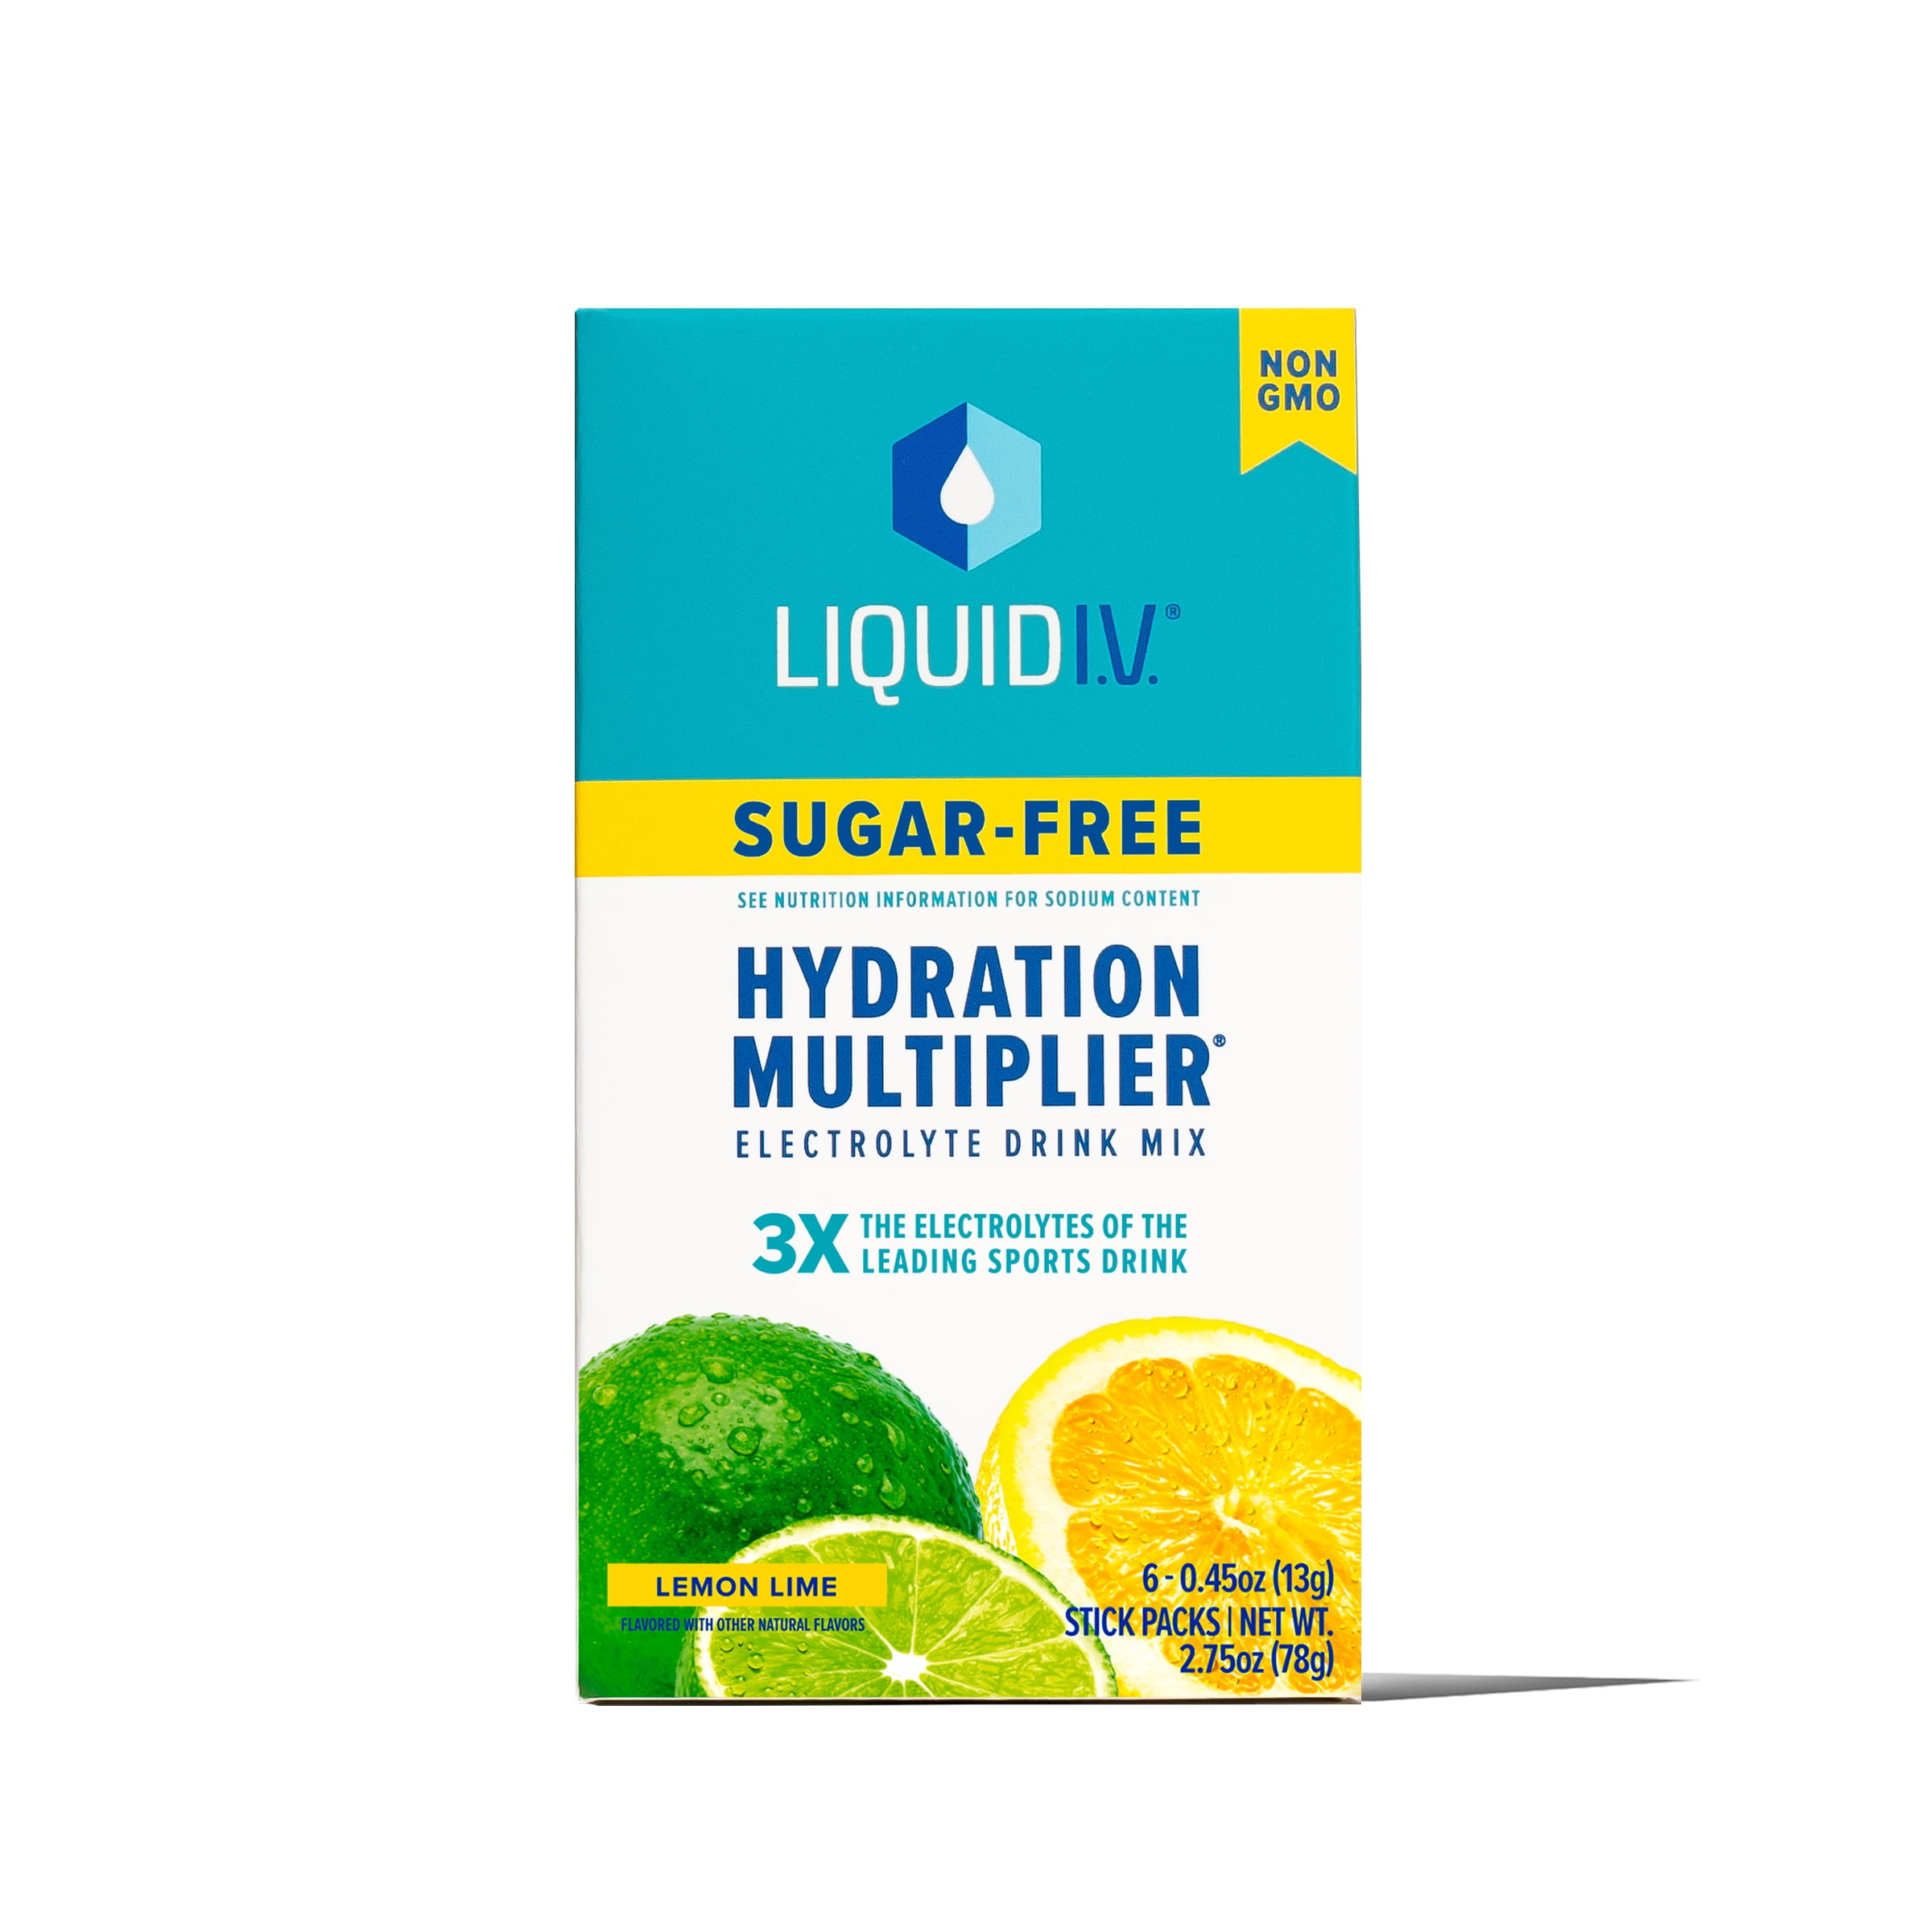 Liquid I.V. Sugar-Free Hydration Multiplier Electrolyte Powder